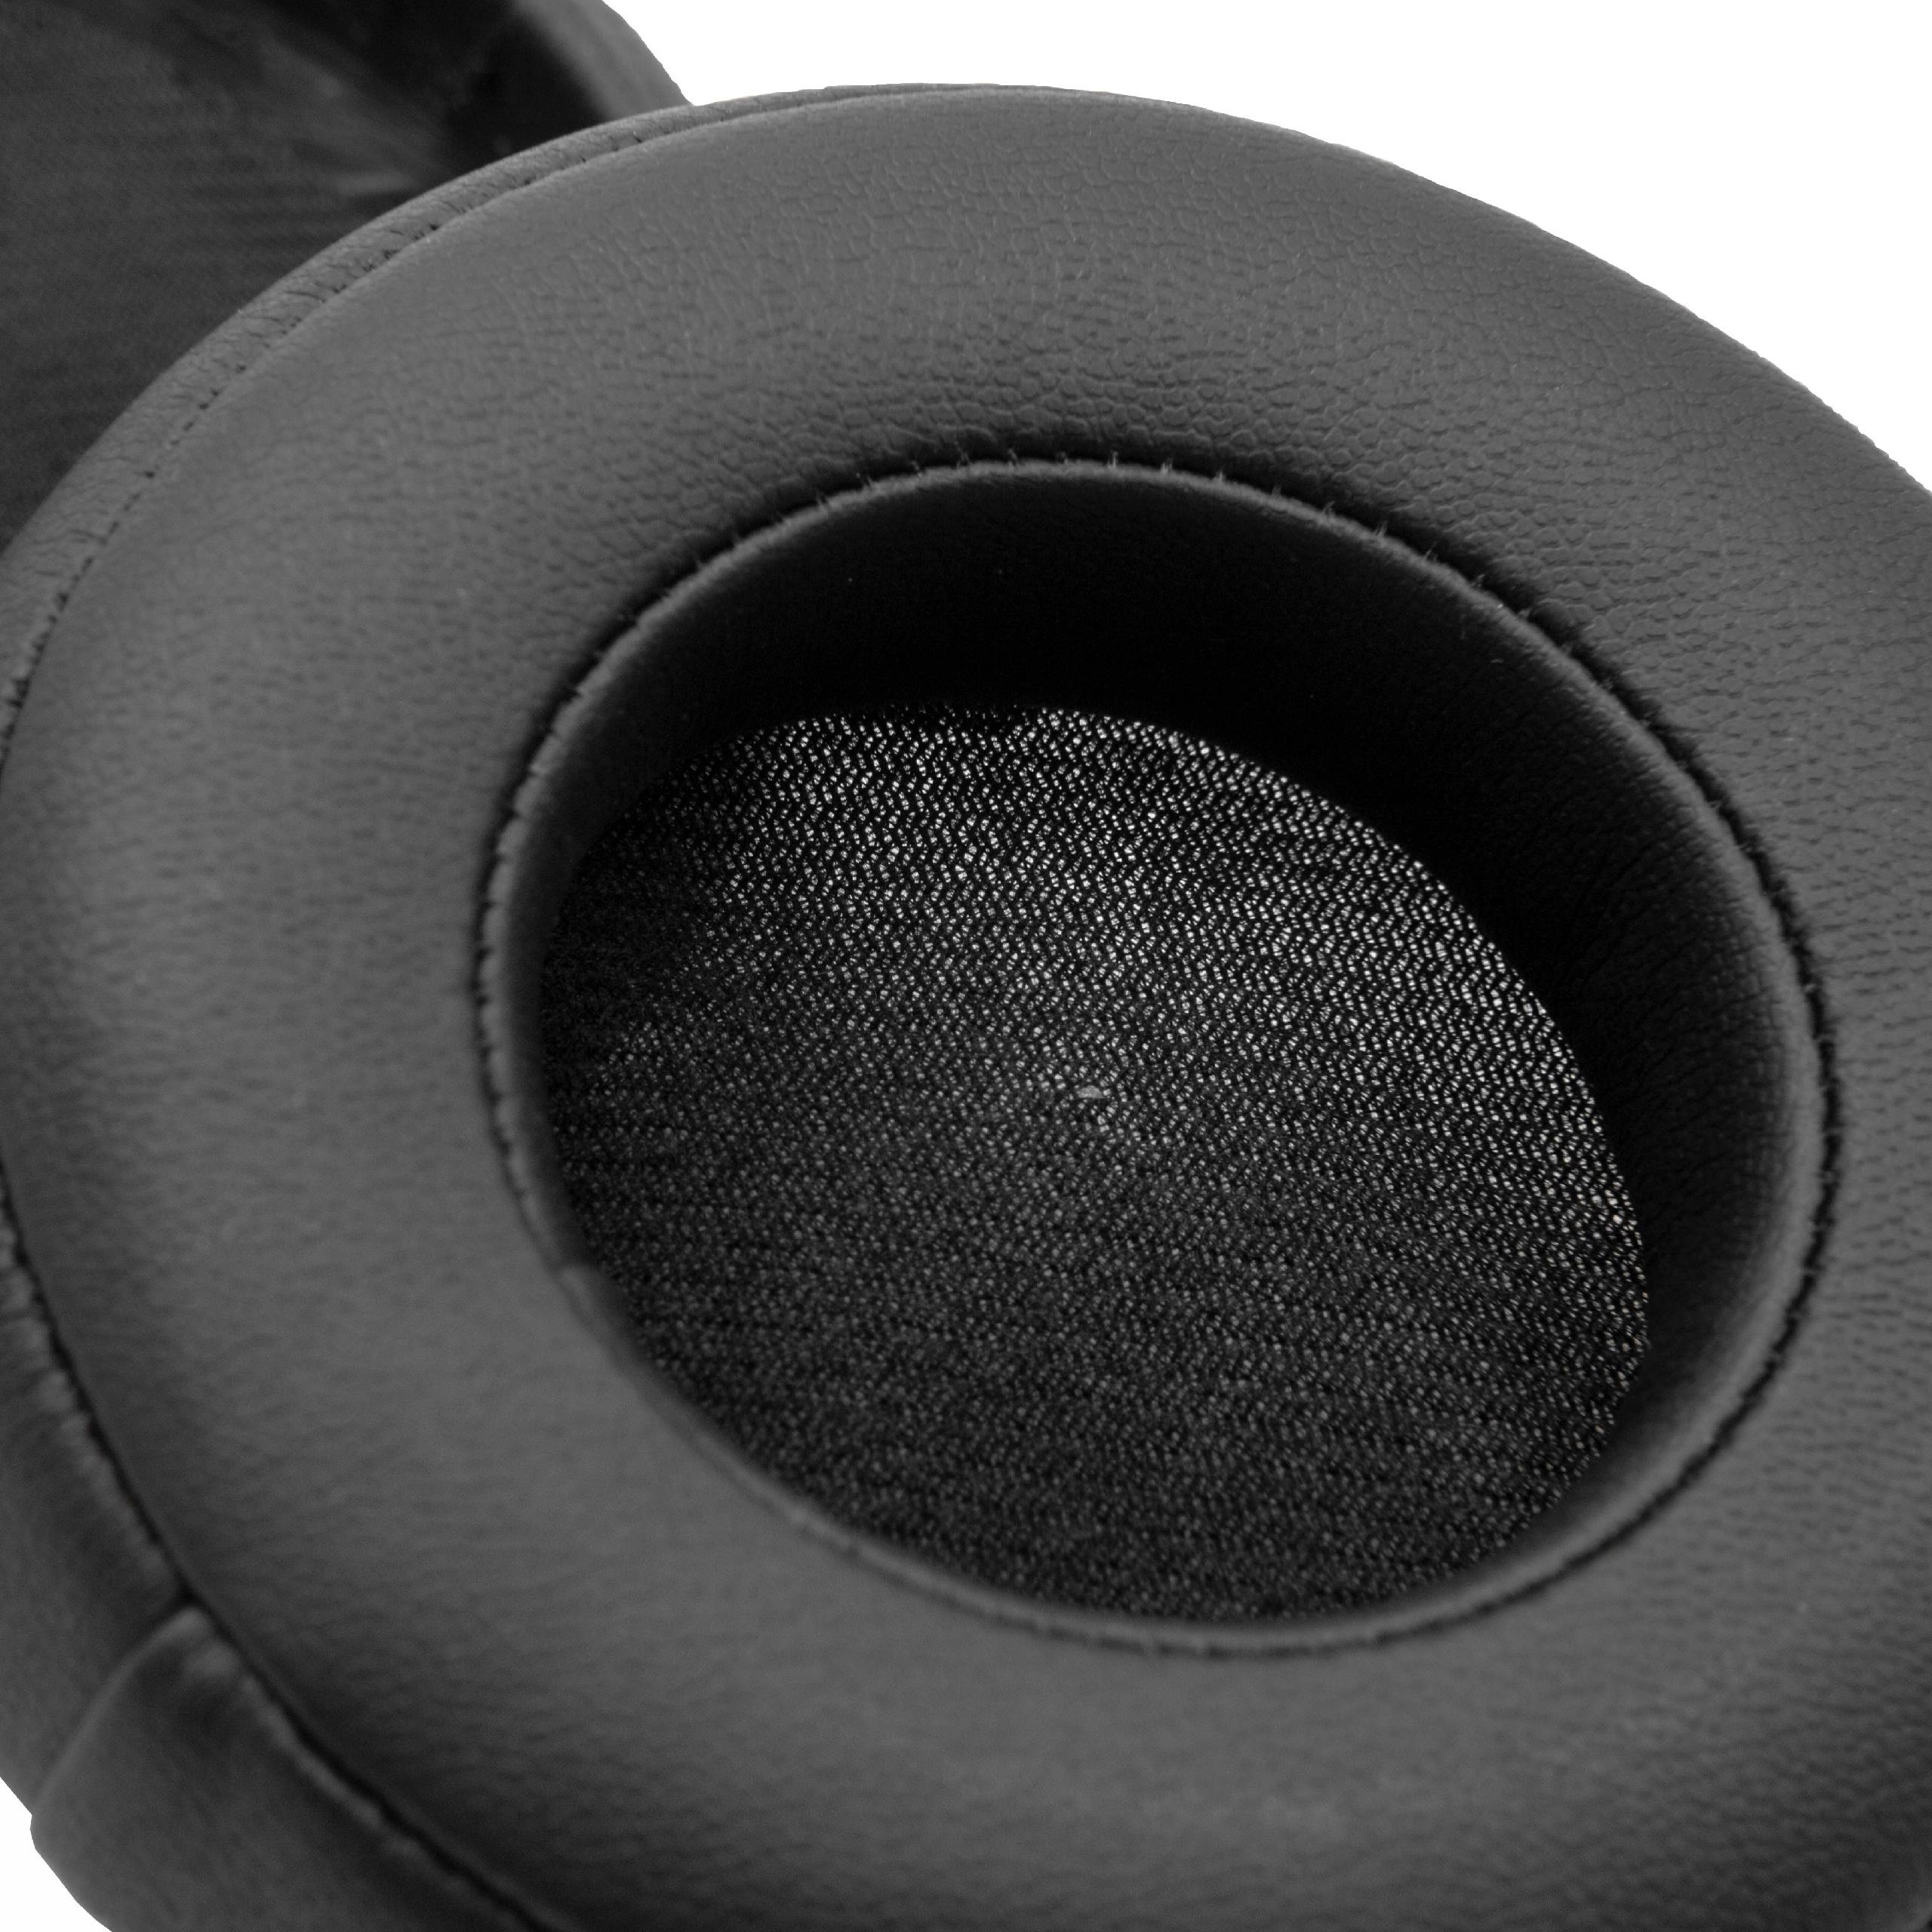 Poduszki do słuchawek Beats Monster by Dr. Dre Mixr - pady śr. 8,5 cm , grub. 25 mm, czarny